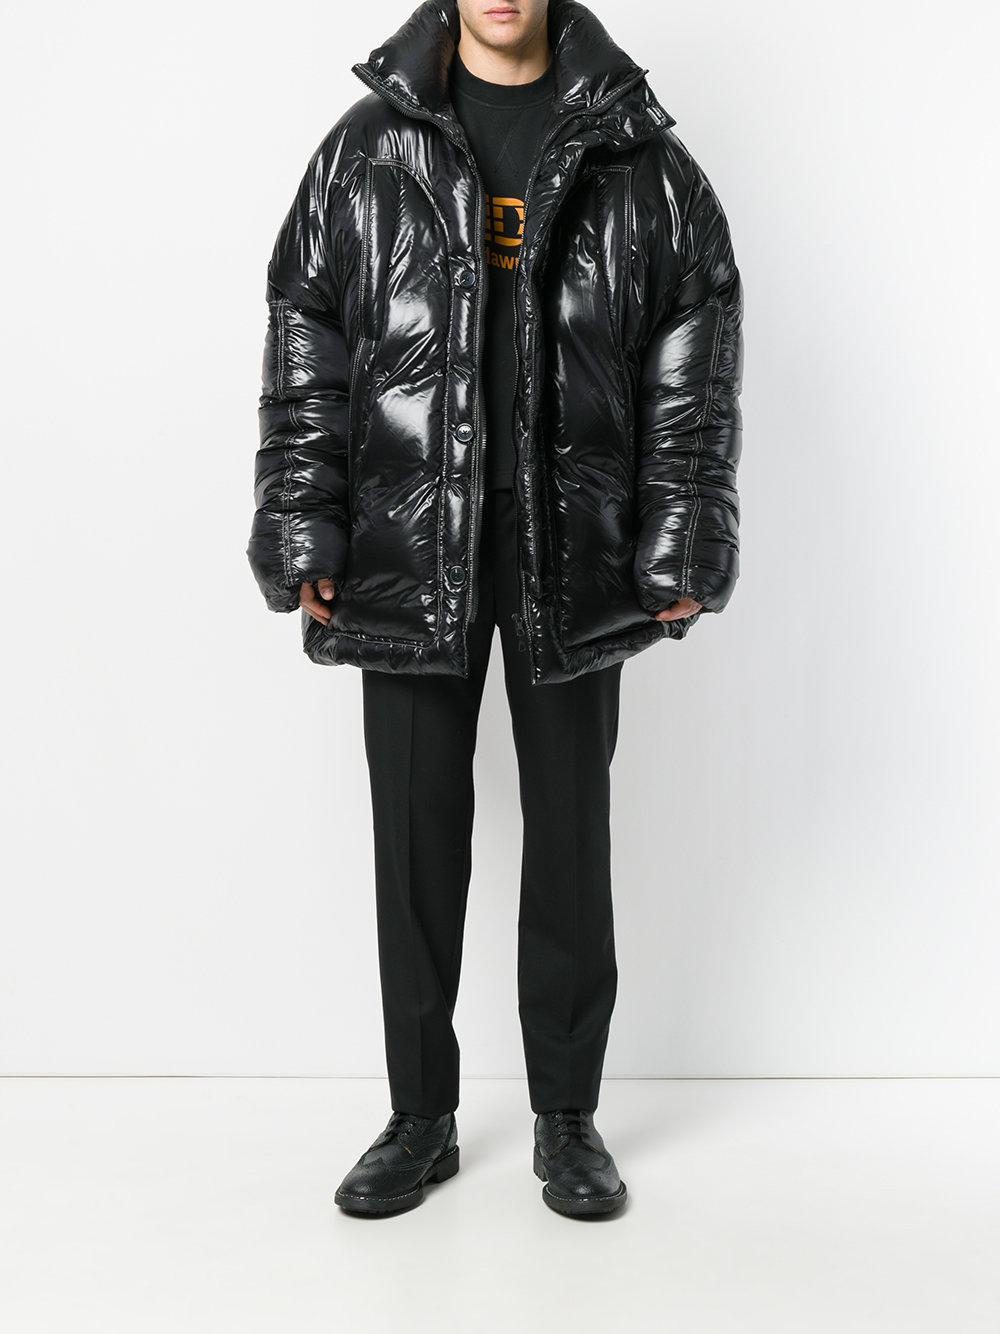 Raf Simons Oversized Padded Jacket in Black for Men - Lyst